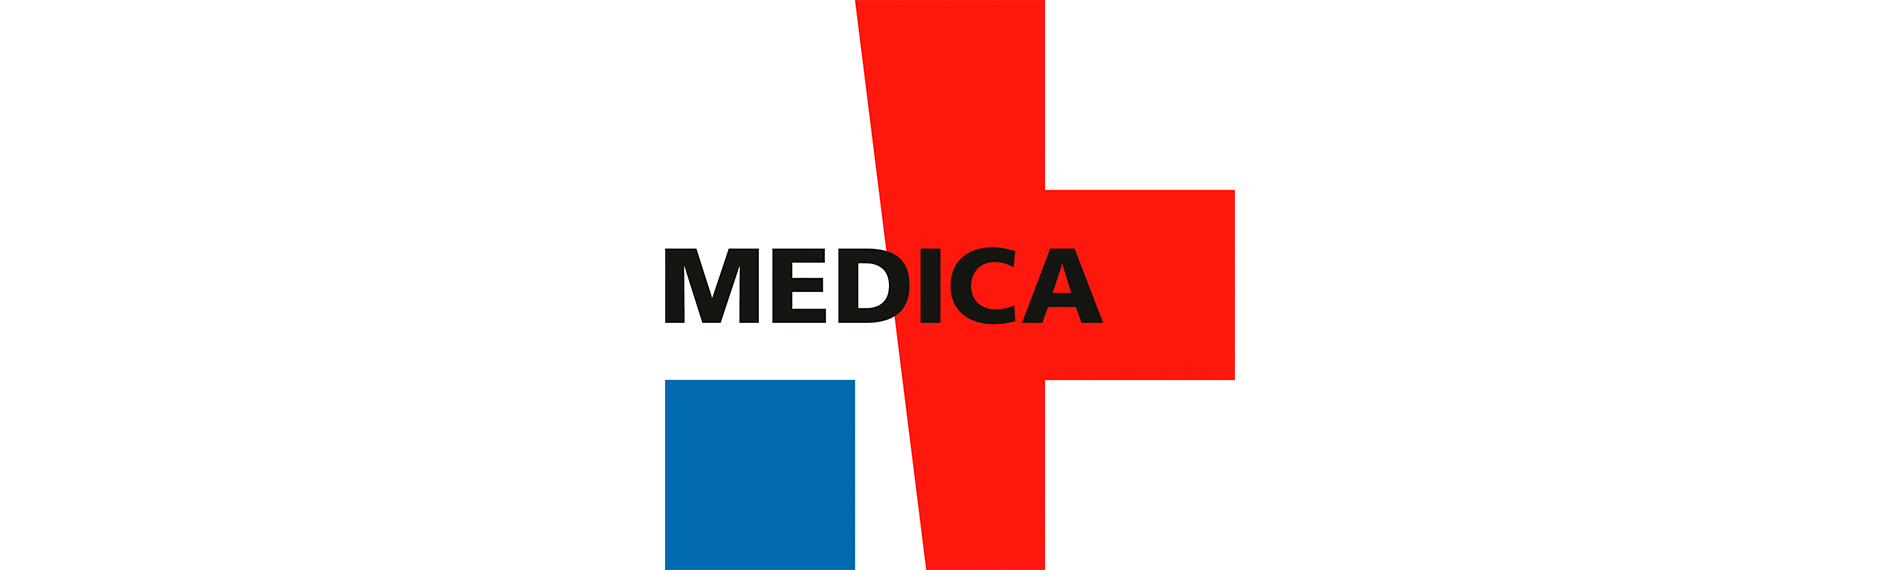 Medica International Medical Trade Fair, 14-17 November 2022